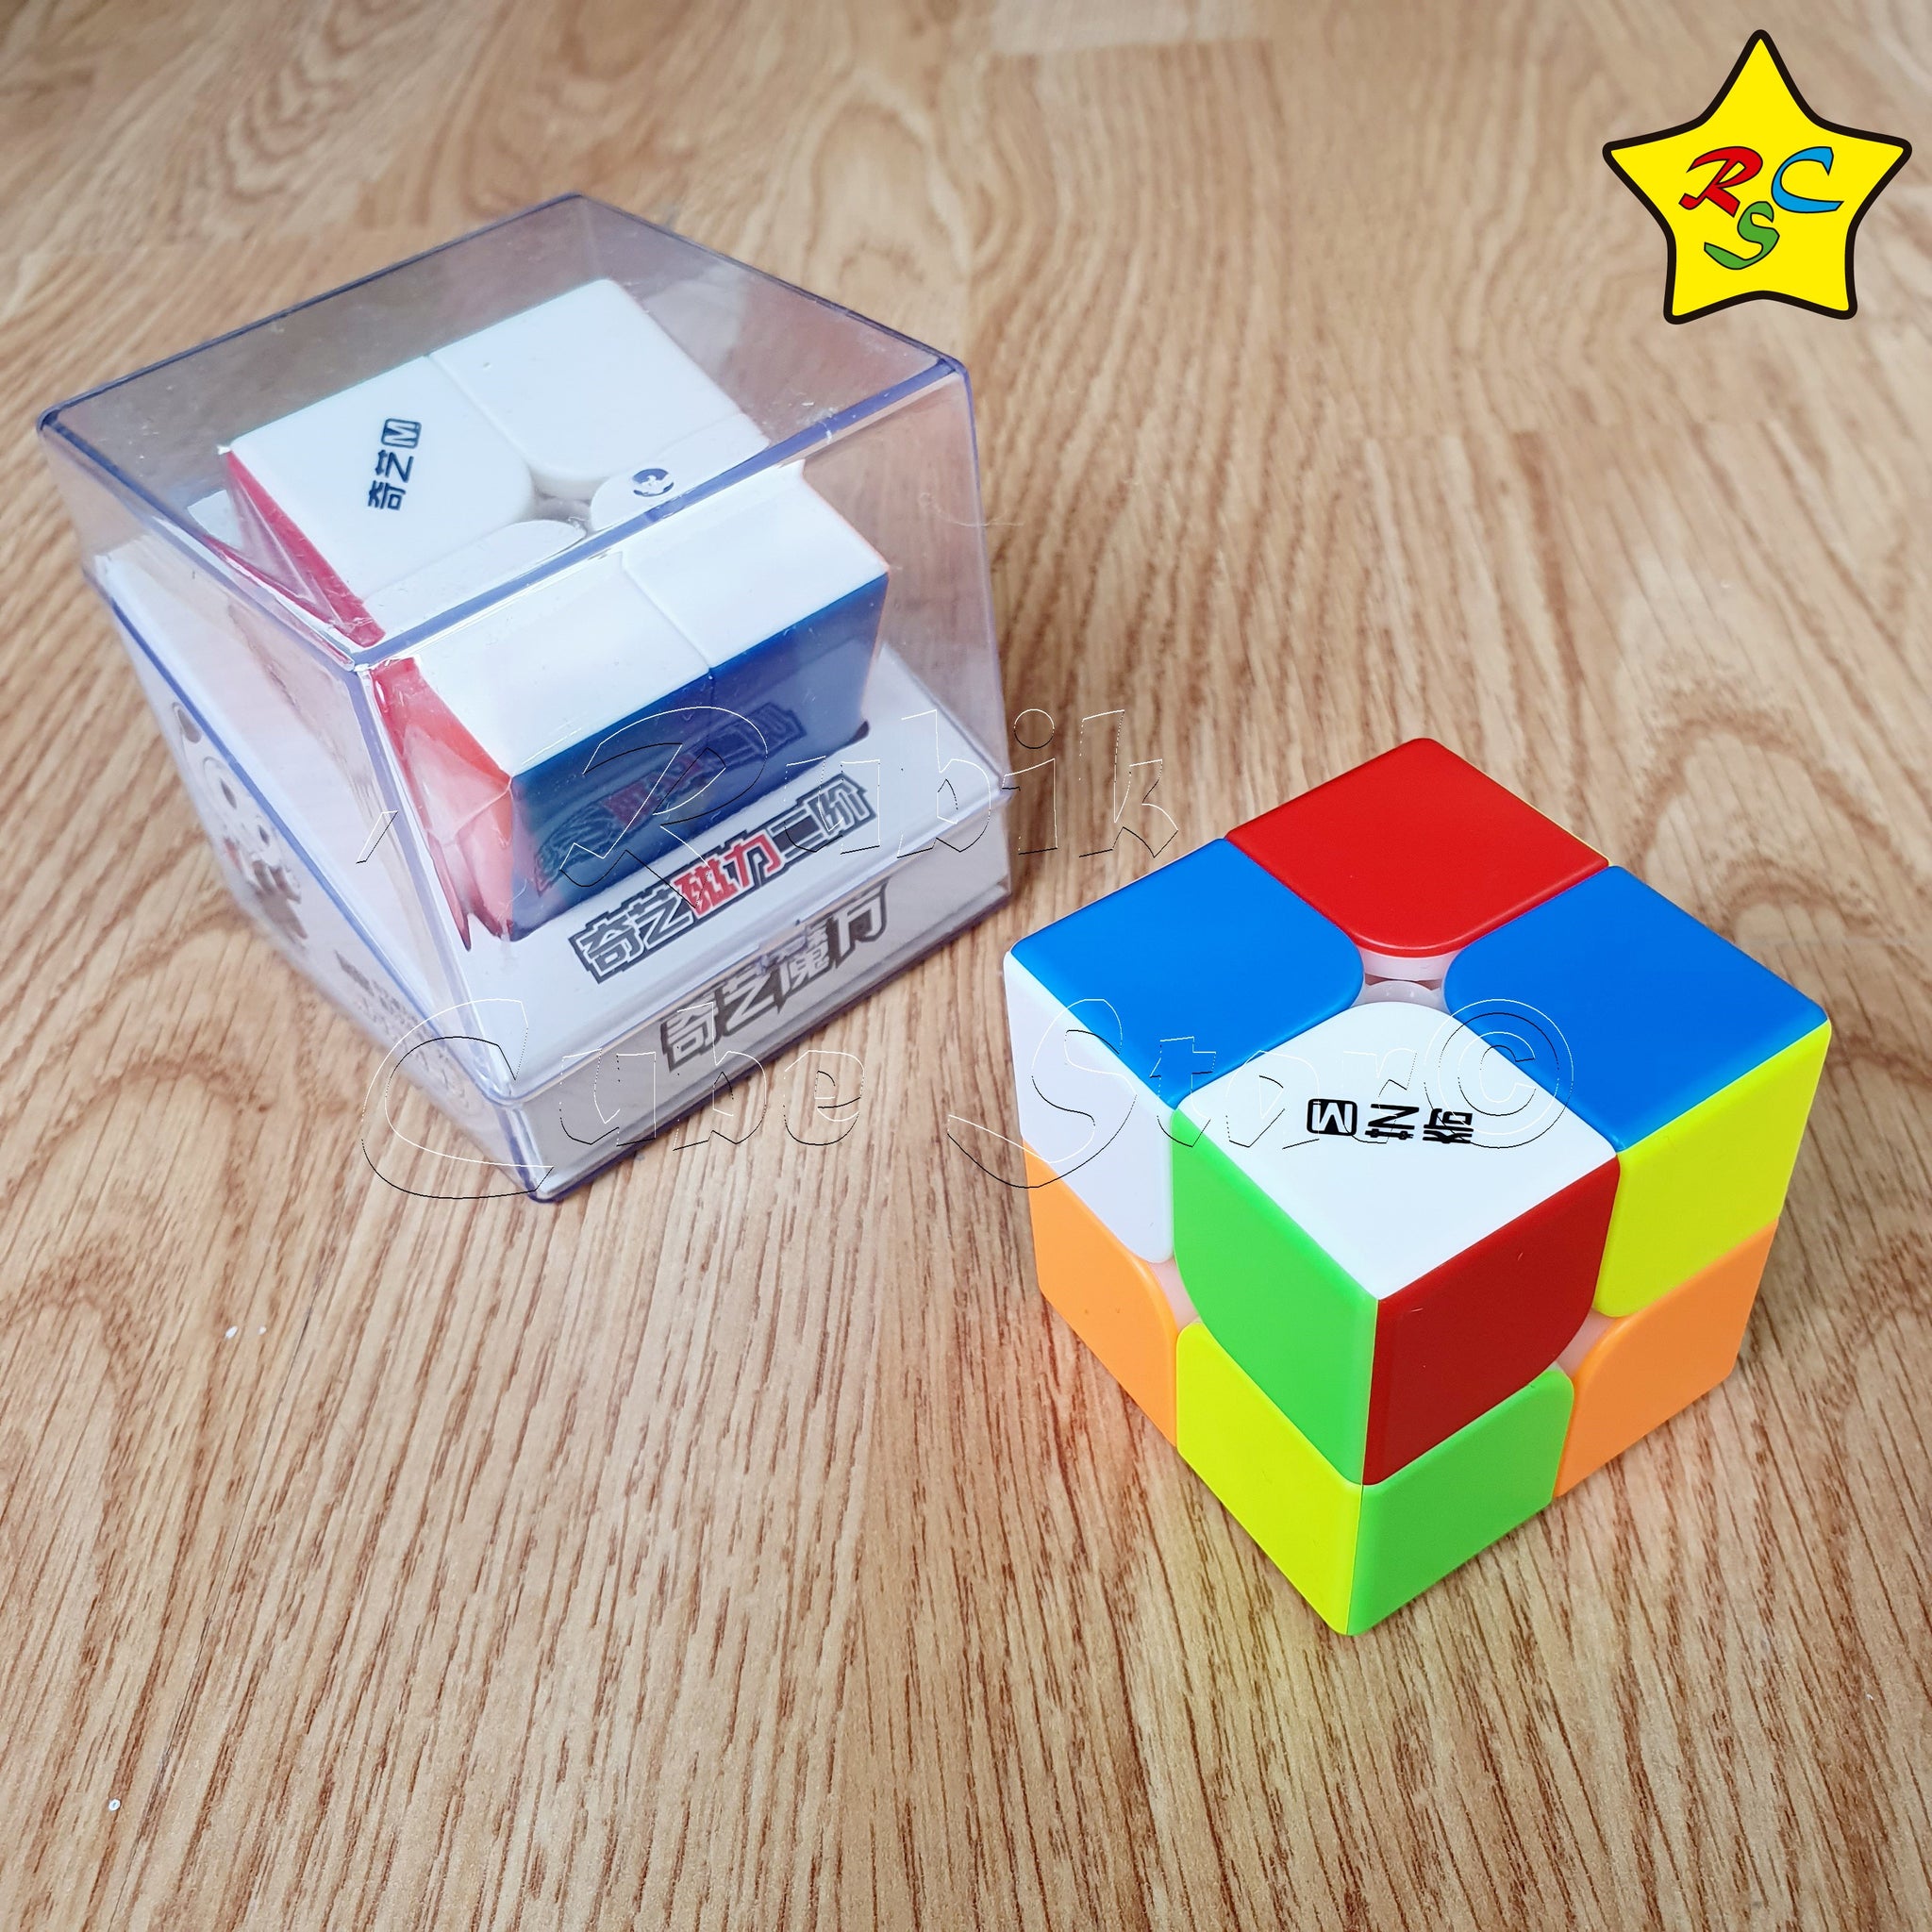 Cubo Magico Mr.M ds2 x 2 x 2